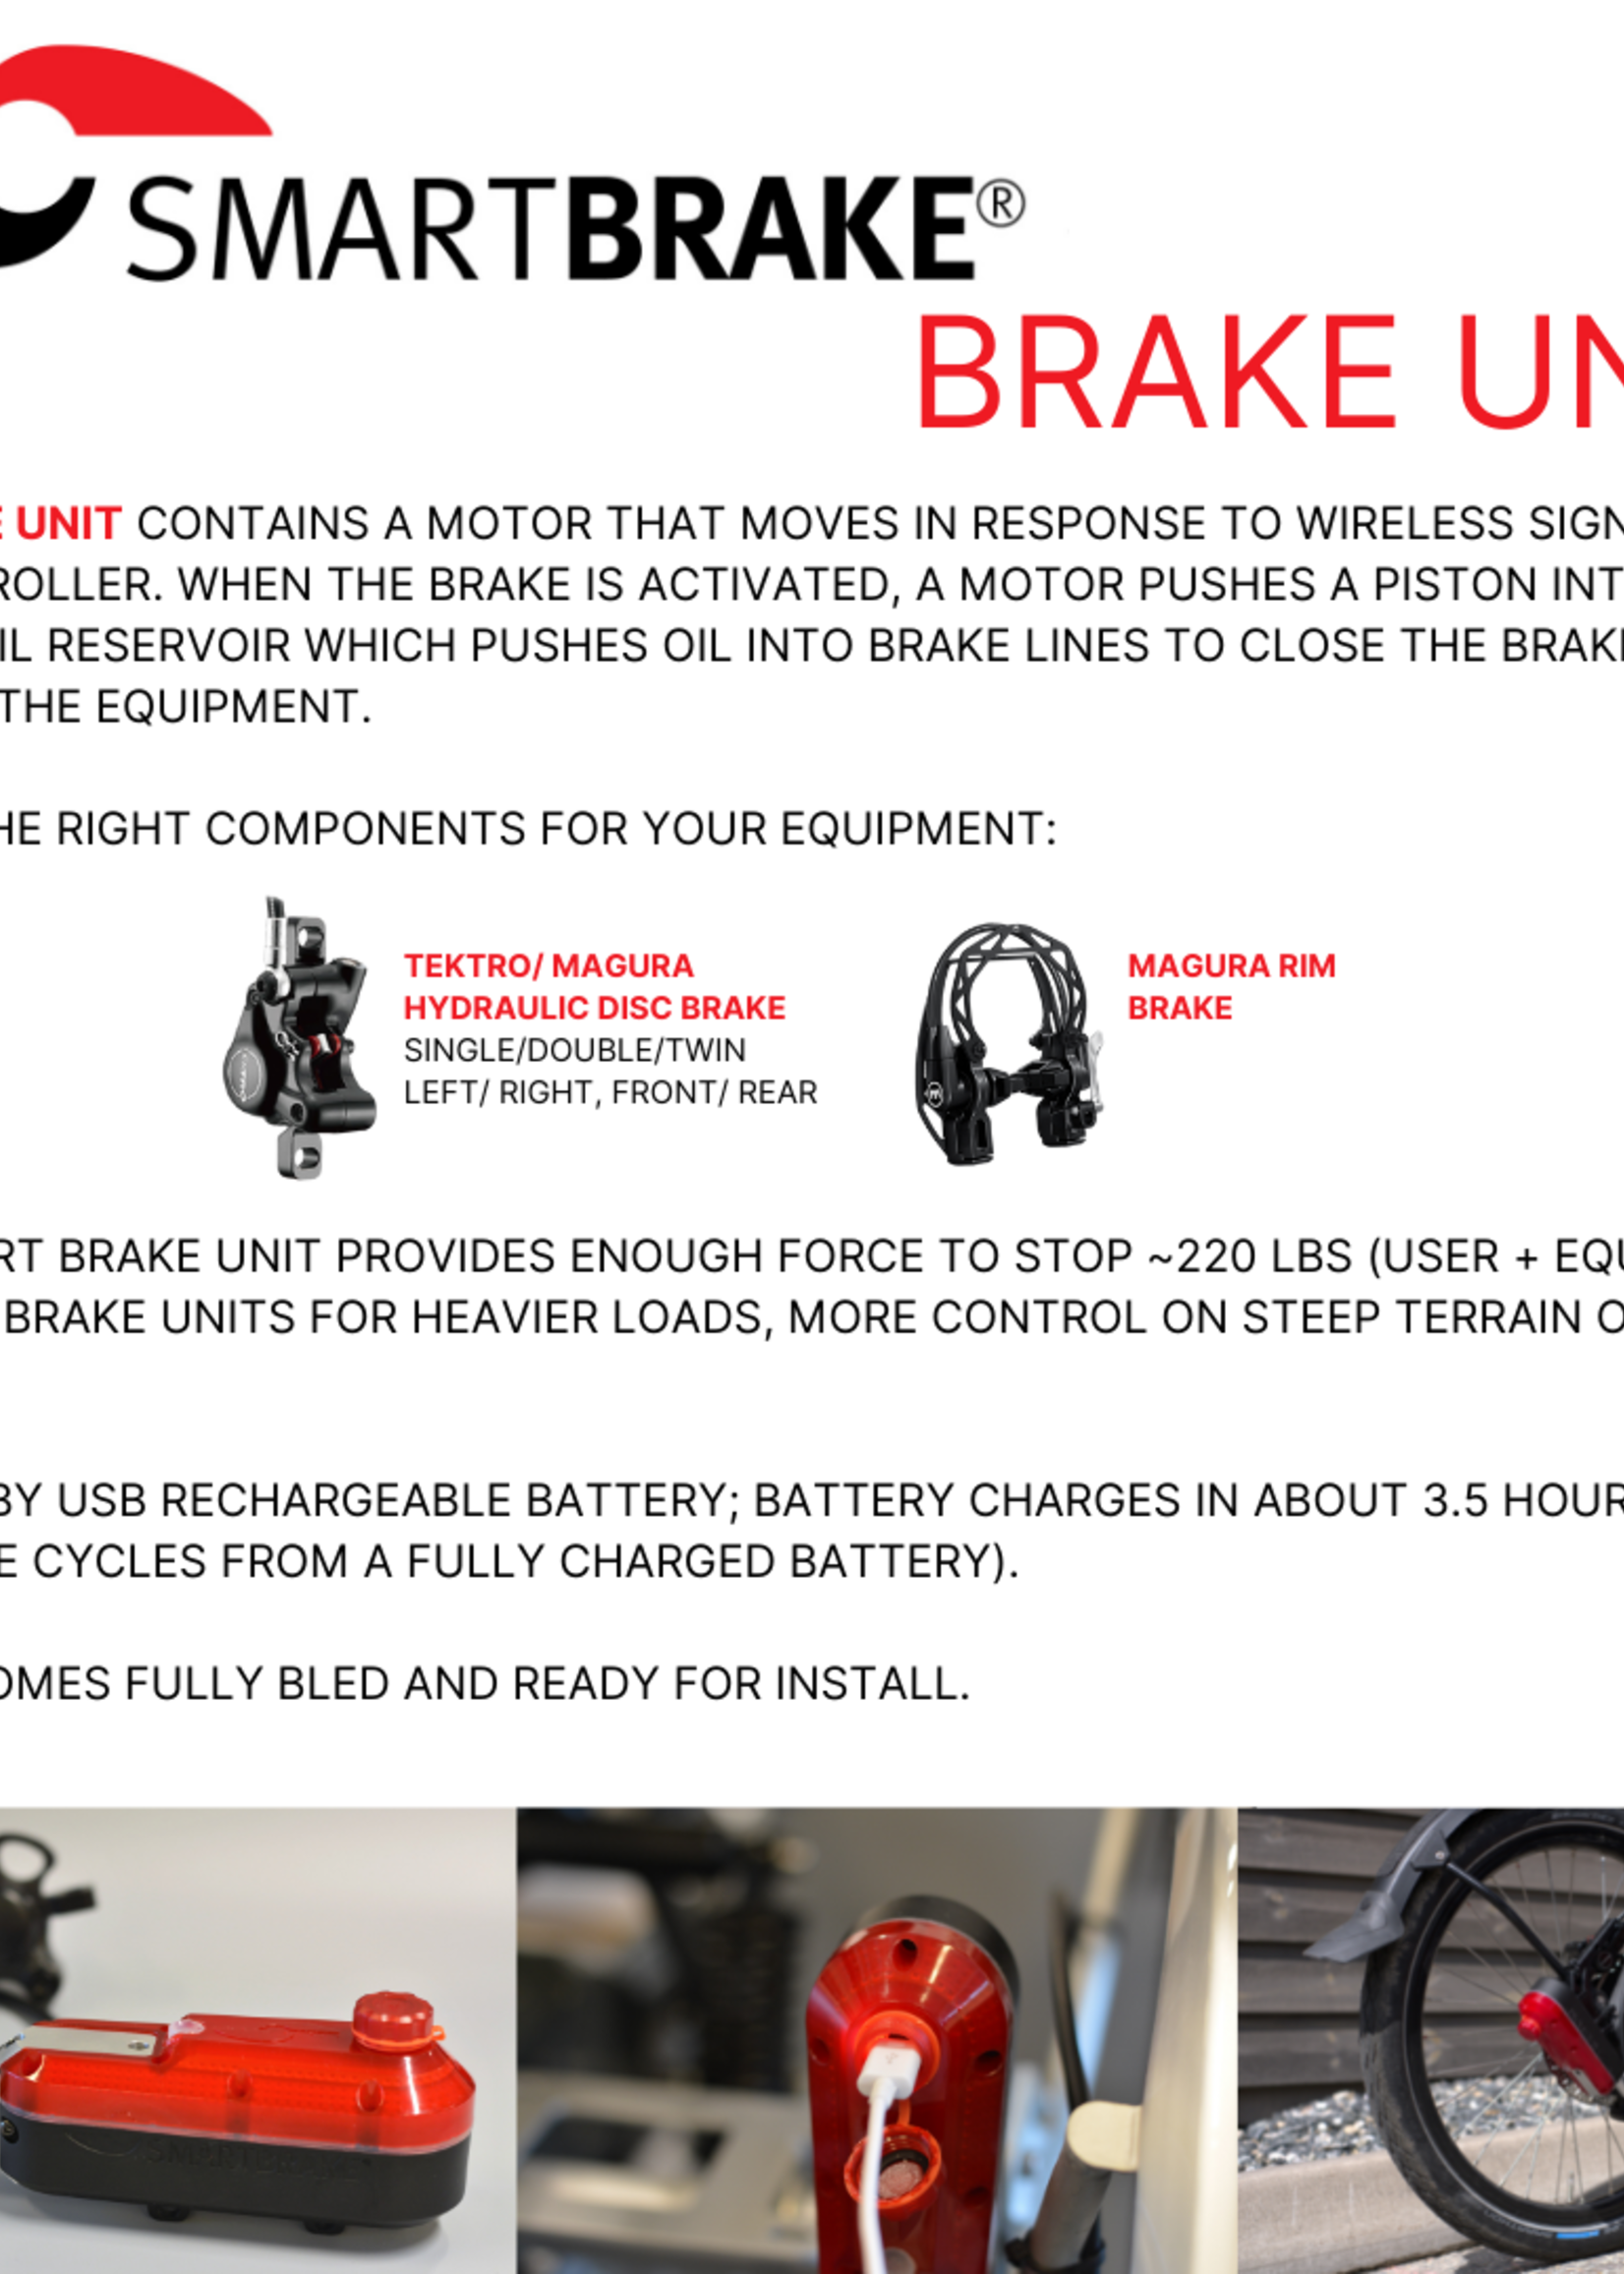 Smart Brake Smart Brake 1x2 Kit: Disc + Brake Lever + Thumb Lever